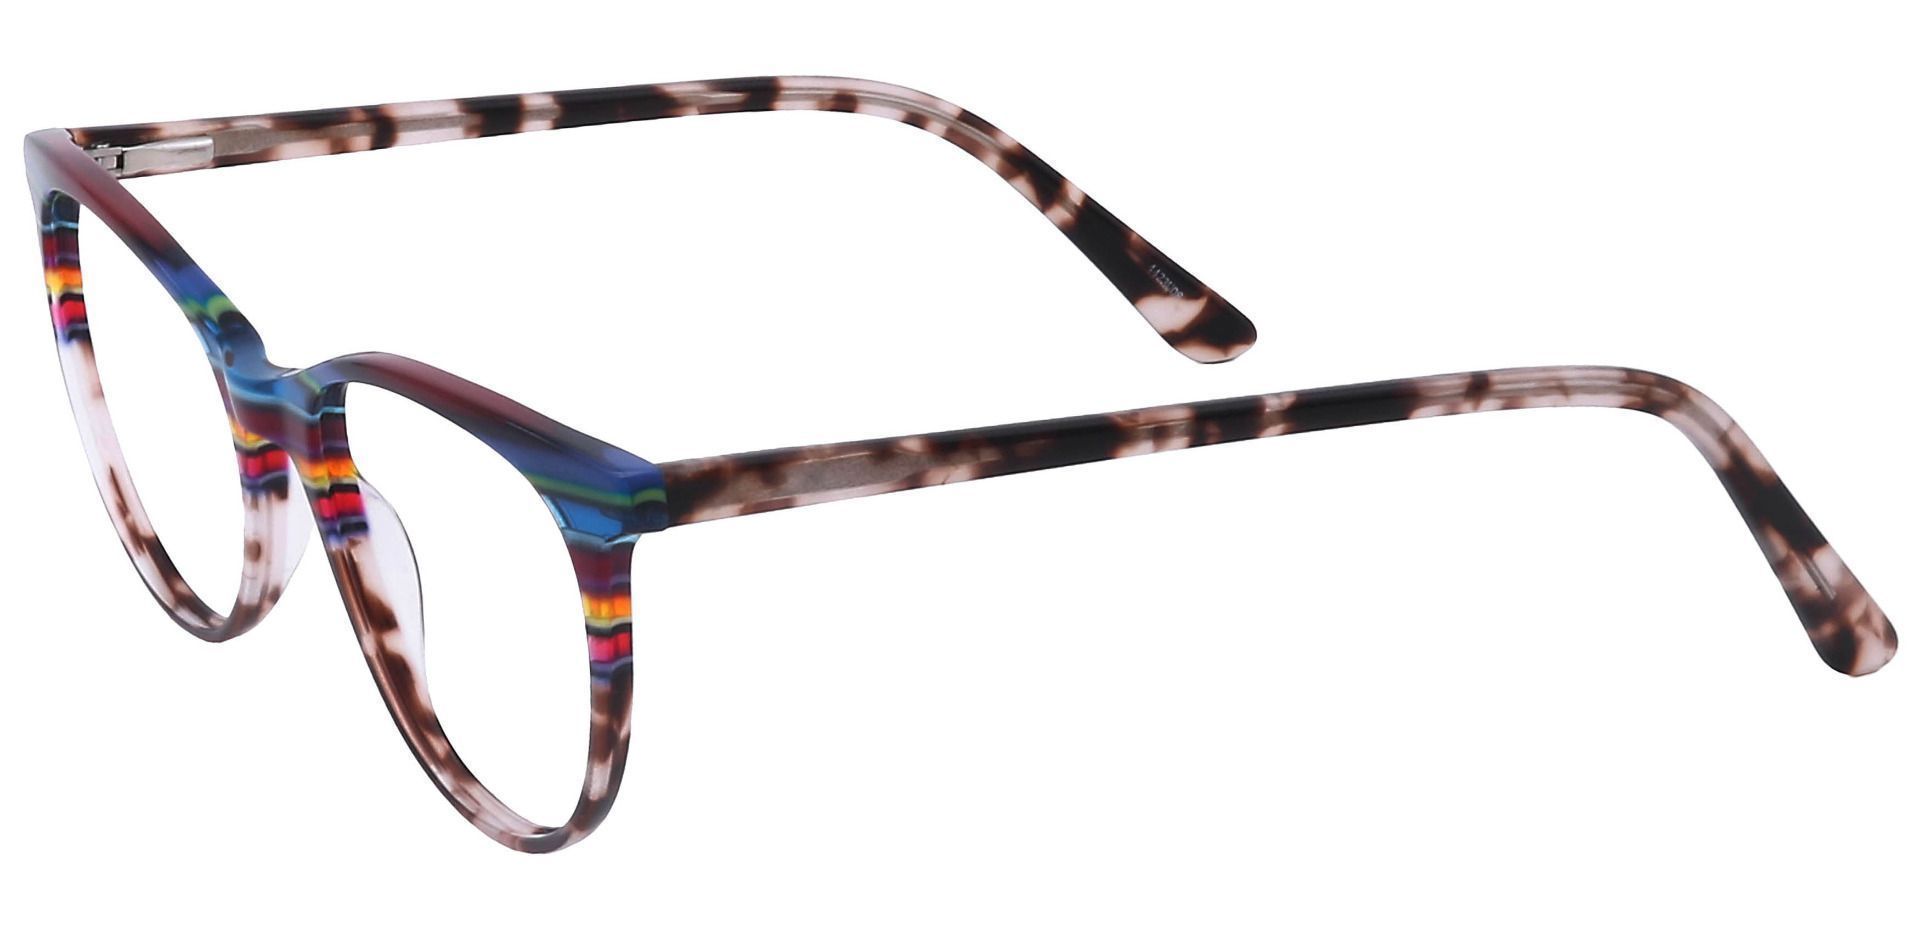 Patagonia Oval Prescription Glasses - Multi Colored Stripes